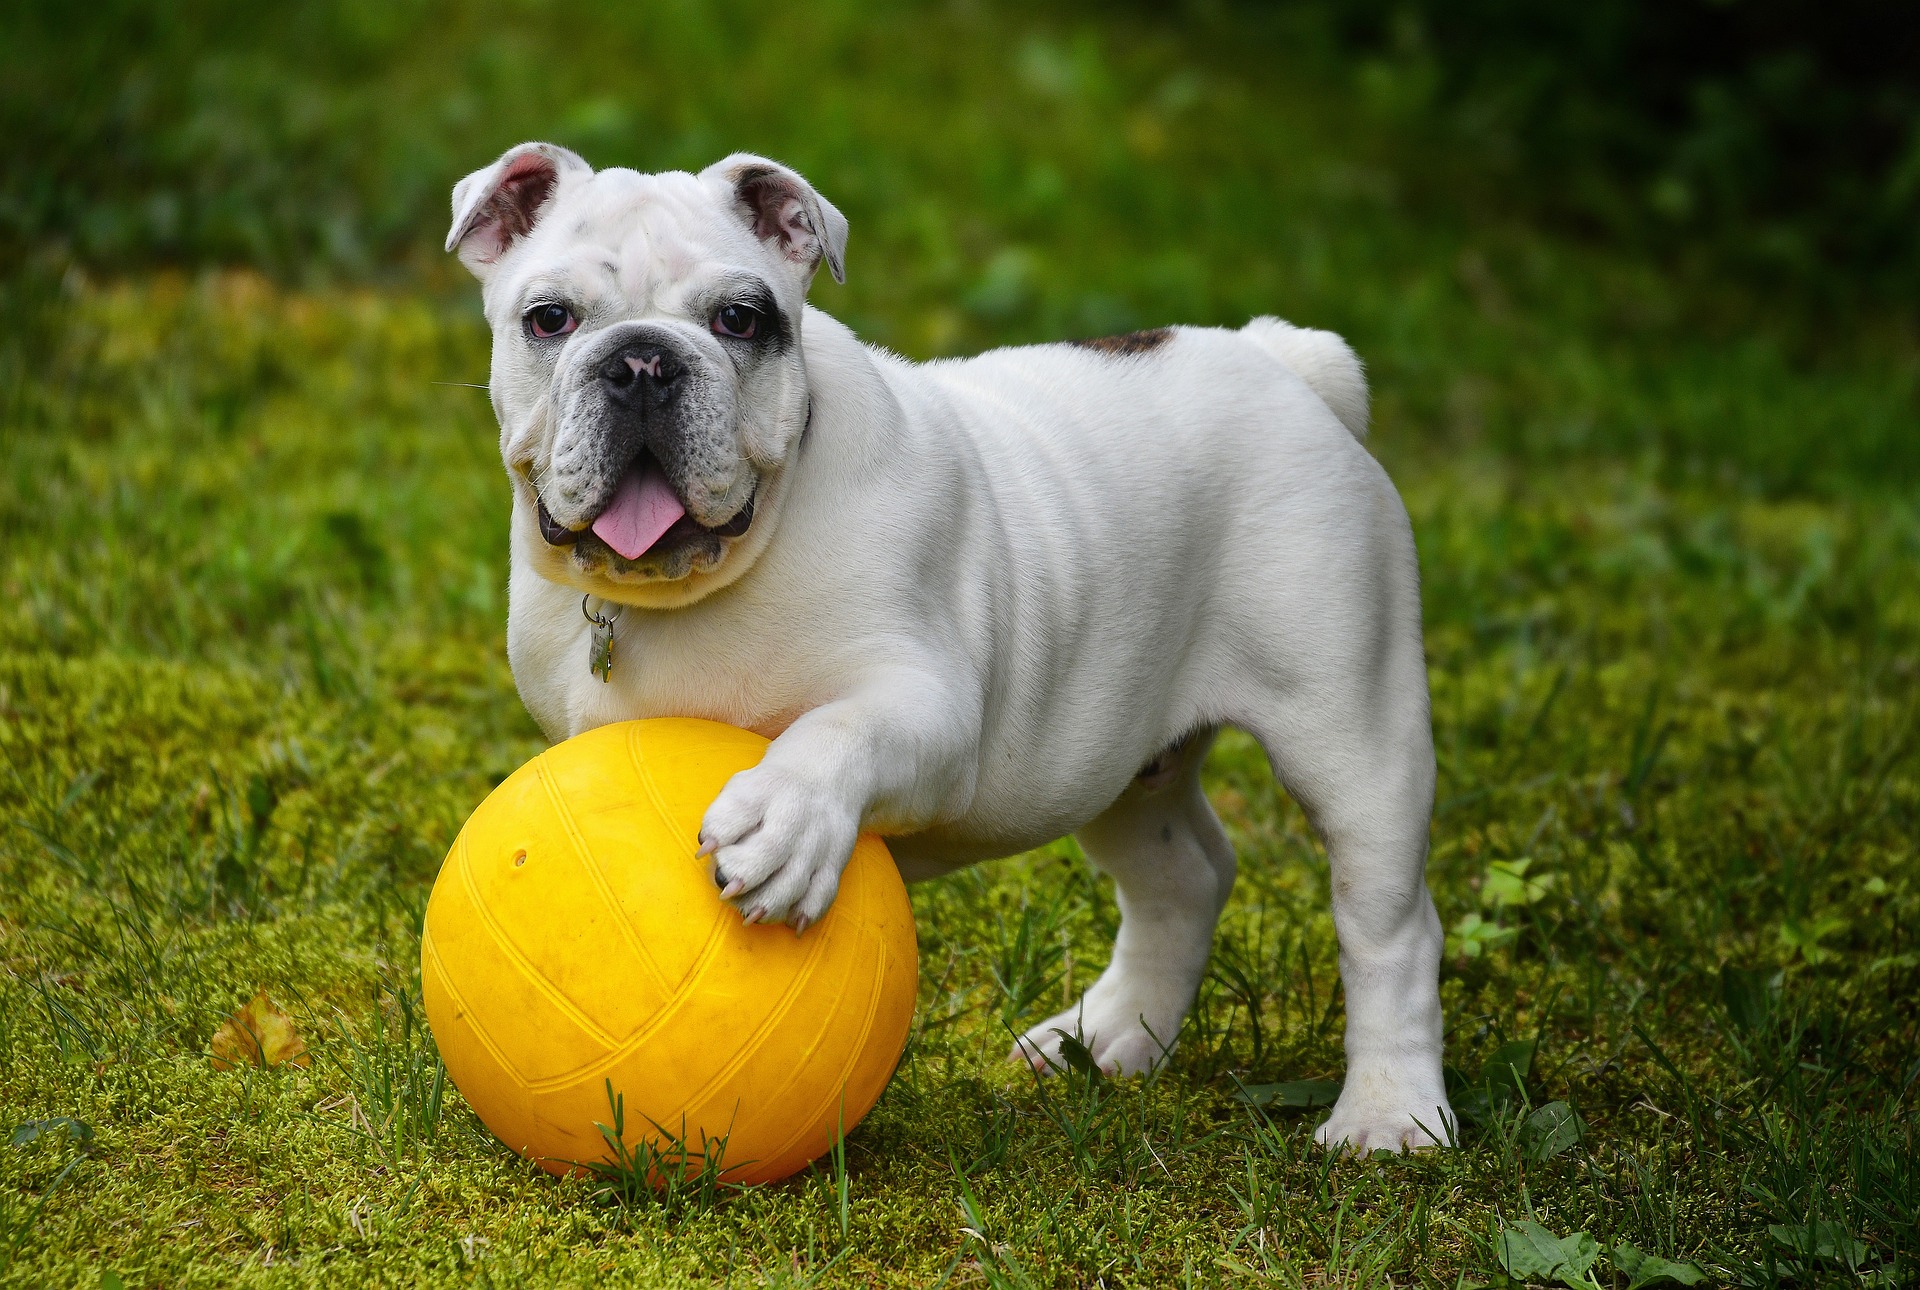 Zabawka piłeczka dla psa – radość, aktywność i interakcja